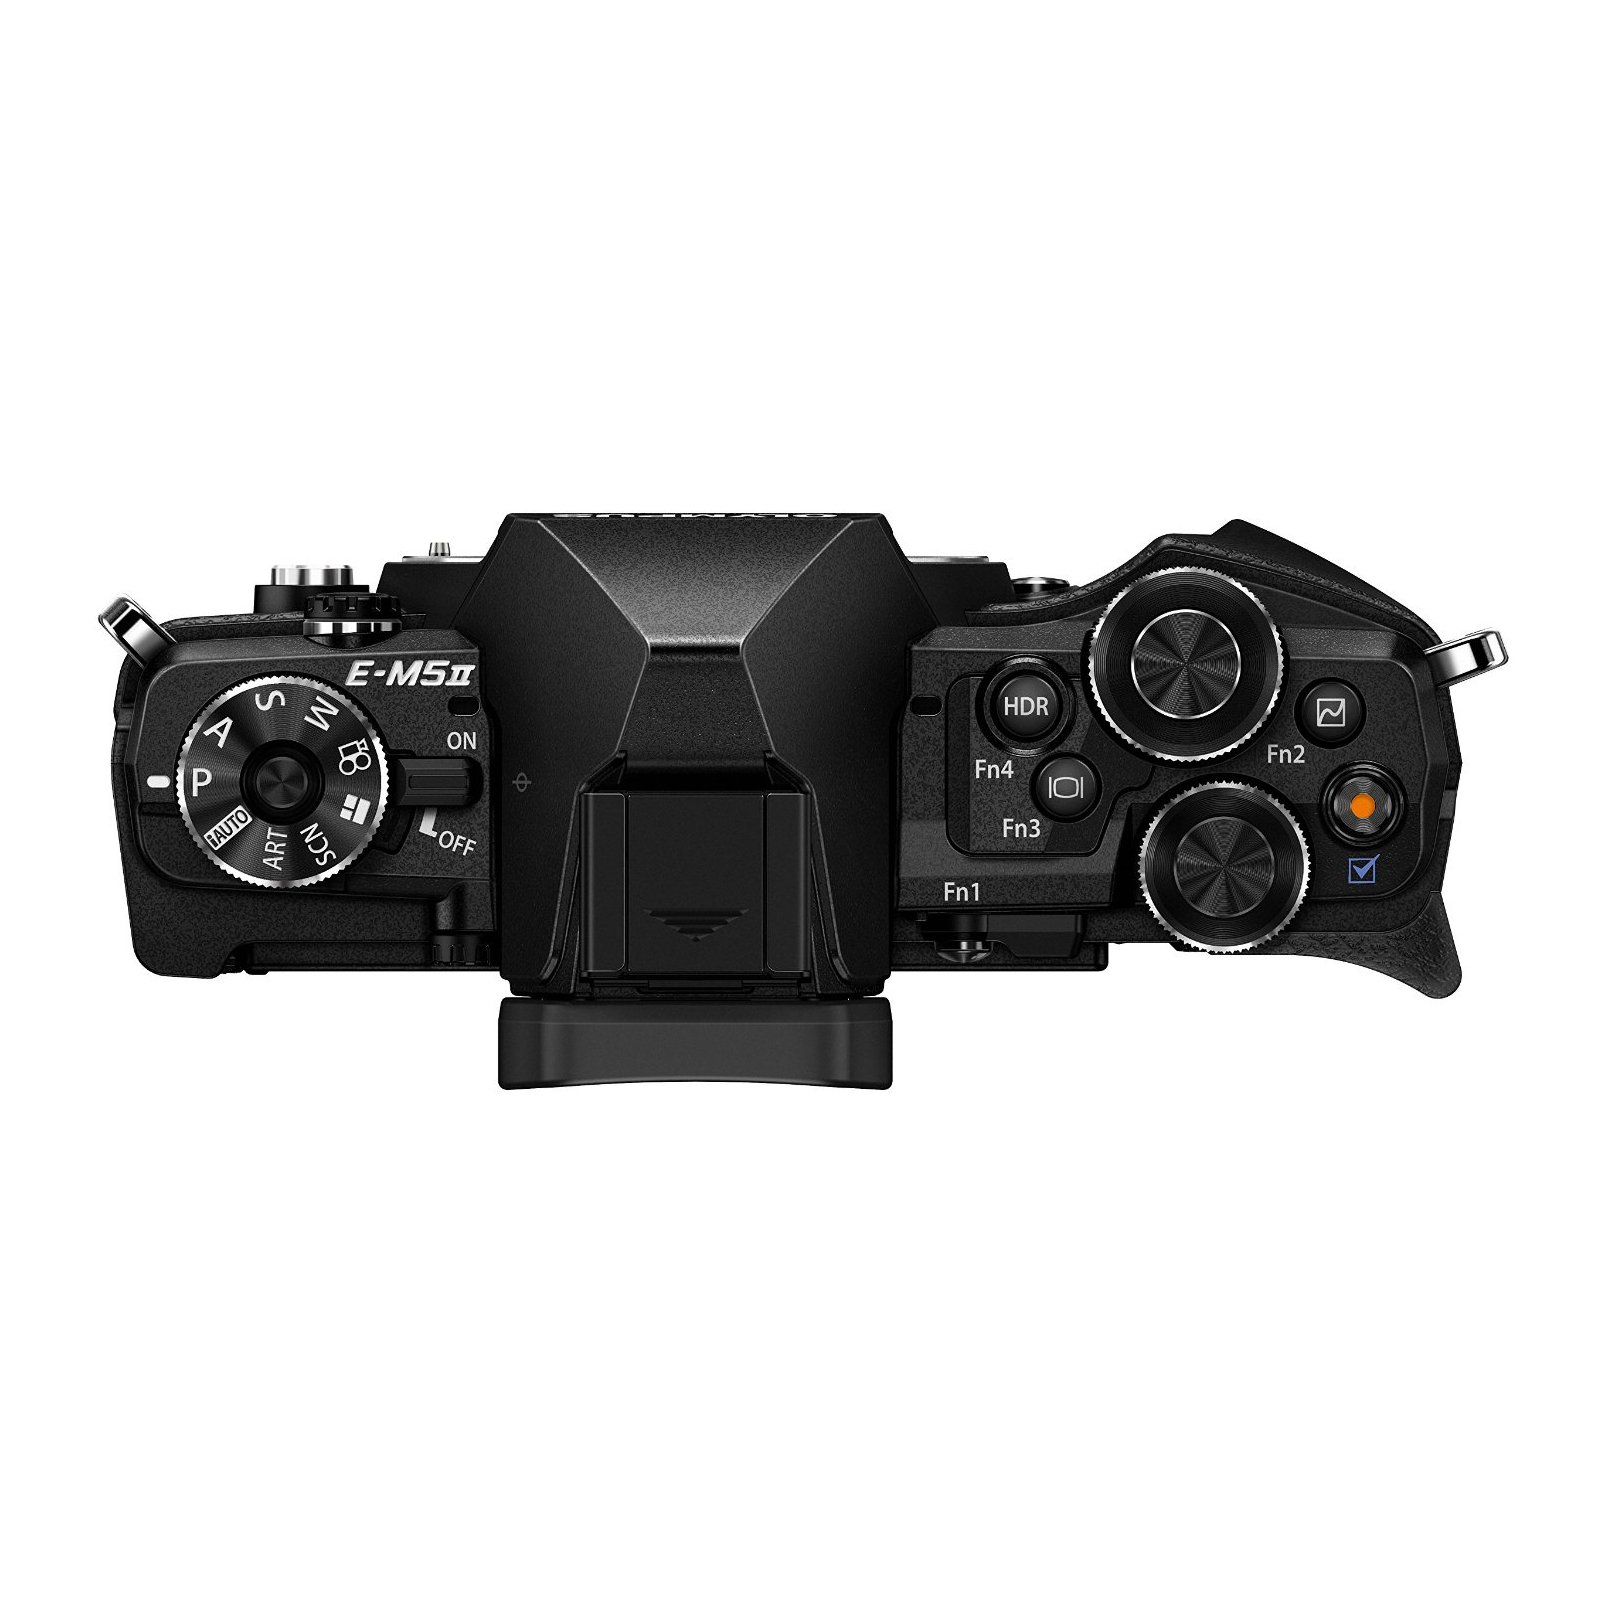 Цифровой фотоаппарат Olympus E-M5 mark II Body black (V207040BE000) изображение 6